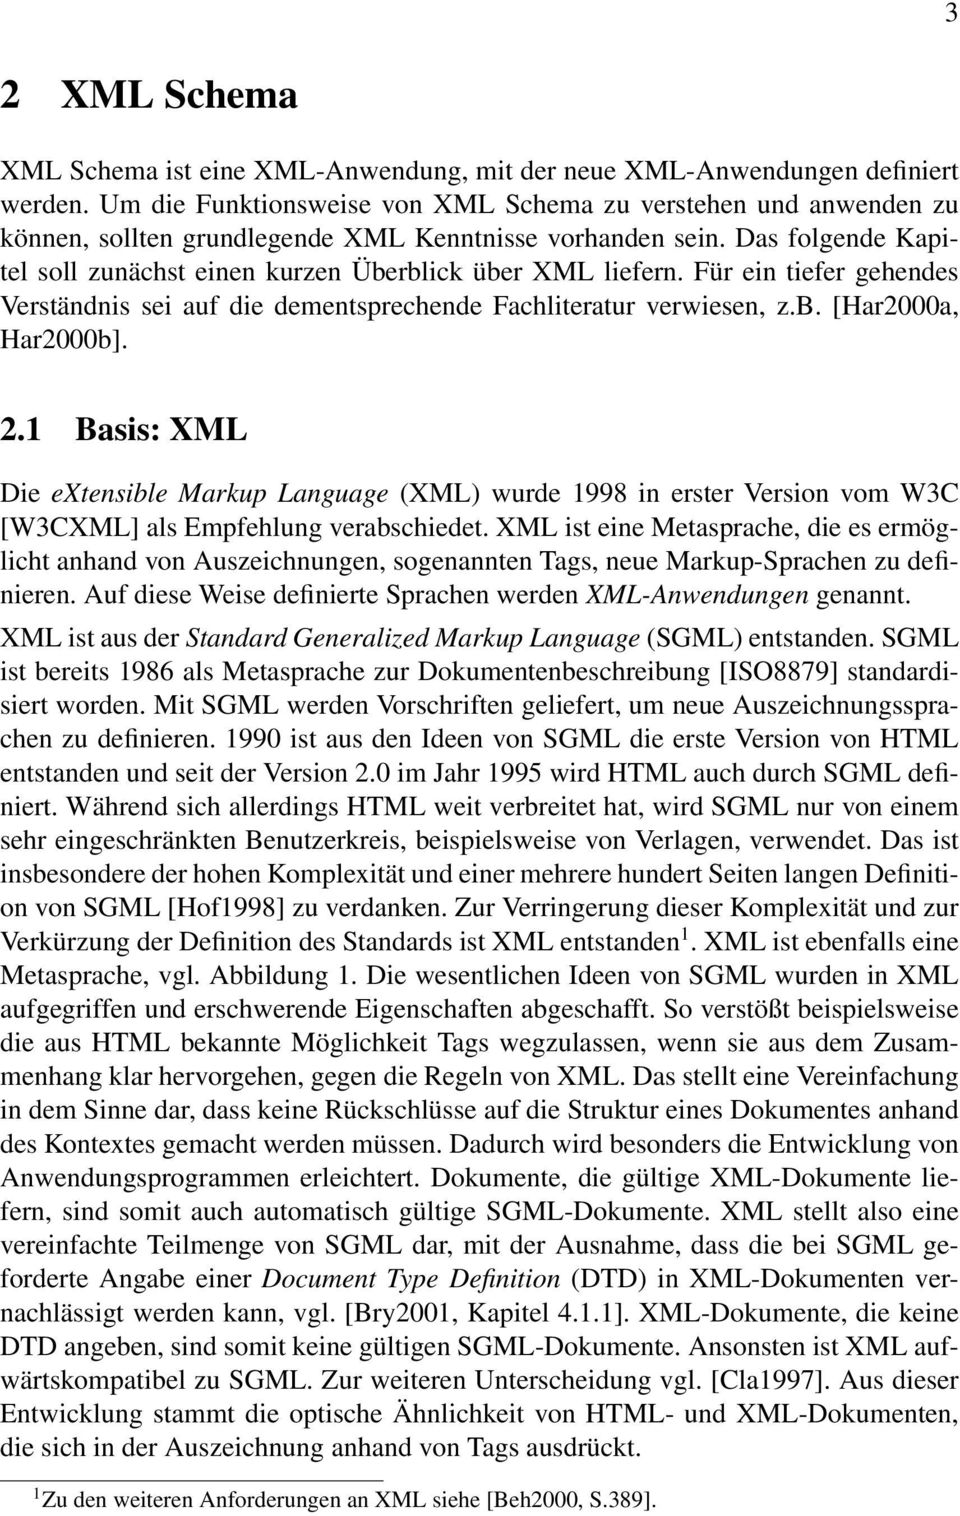 Das folgende Kapitel soll zunächst einen kurzen Überblick über XML liefern. Für ein tiefer gehendes Verständnis sei auf die dementsprechende Fachliteratur verwiesen, z.b. [Har2000a, Har2000b]. 2.